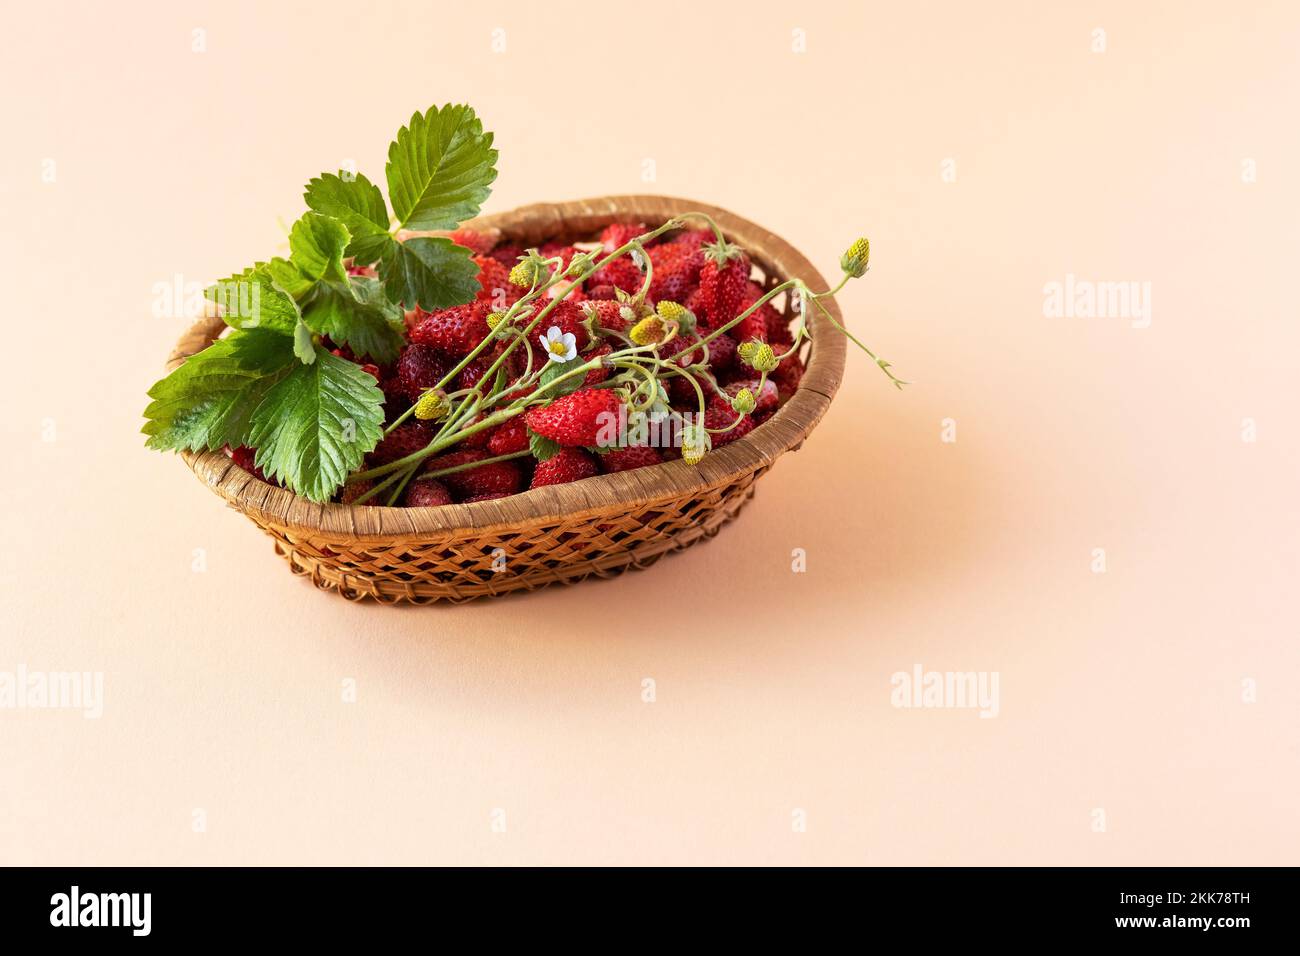 Wilde Erdbeeren in einem beigen Korb auf orangefarbenem Hintergrund mit grünen Blättern, gesundes und leckeres Essen Stockfoto